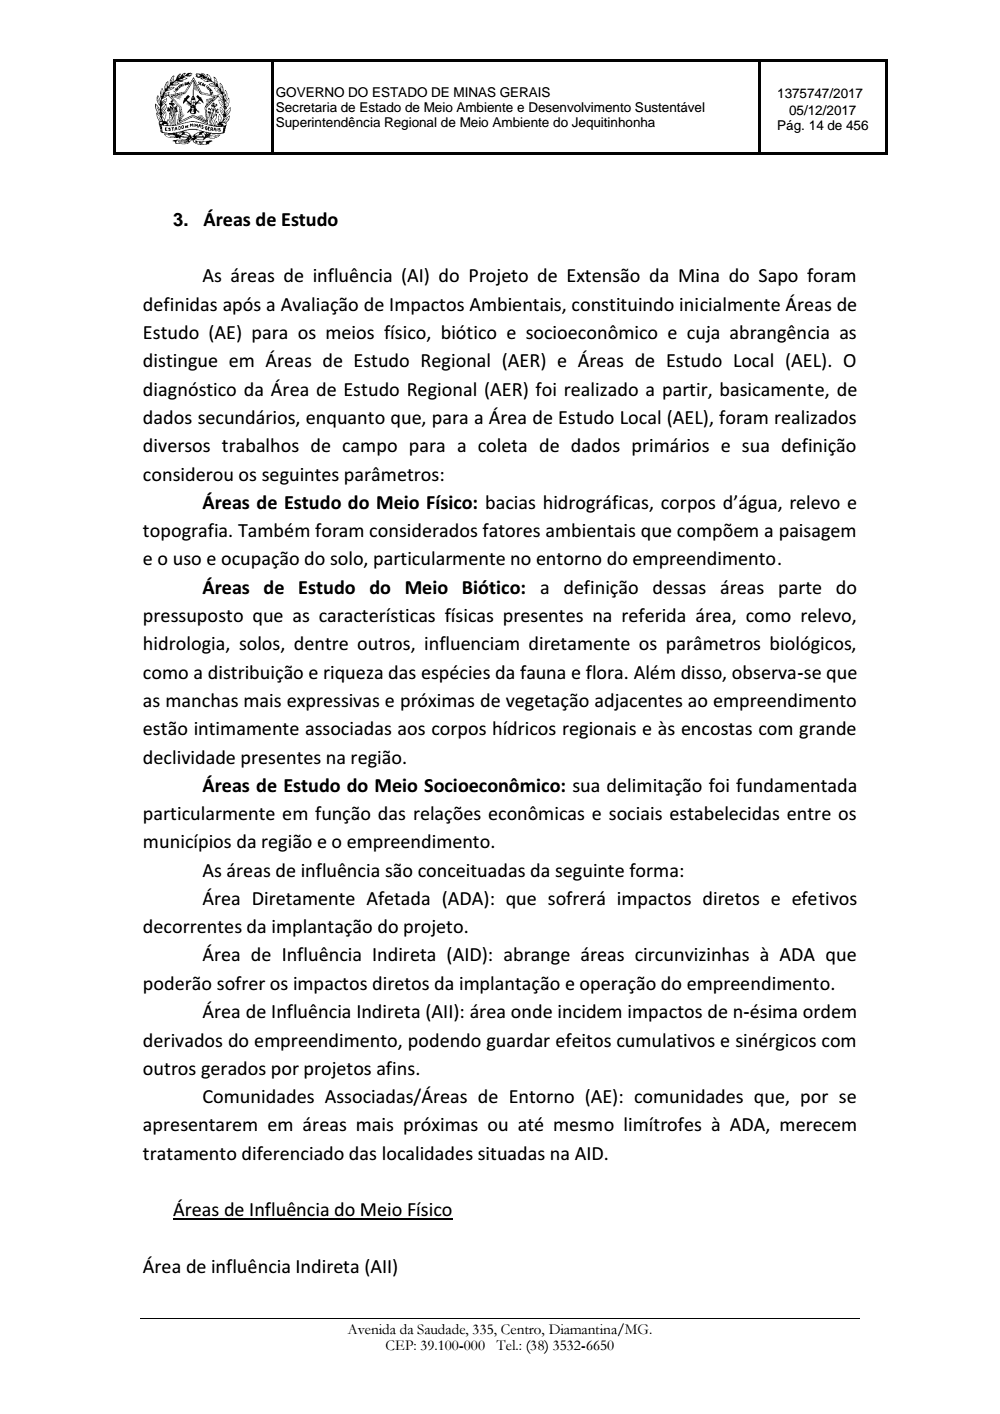 Page 14 from Parecer único da Secretaria de estado de Meio Ambiente e Desenvolvimento Sustentável (SEMAD)